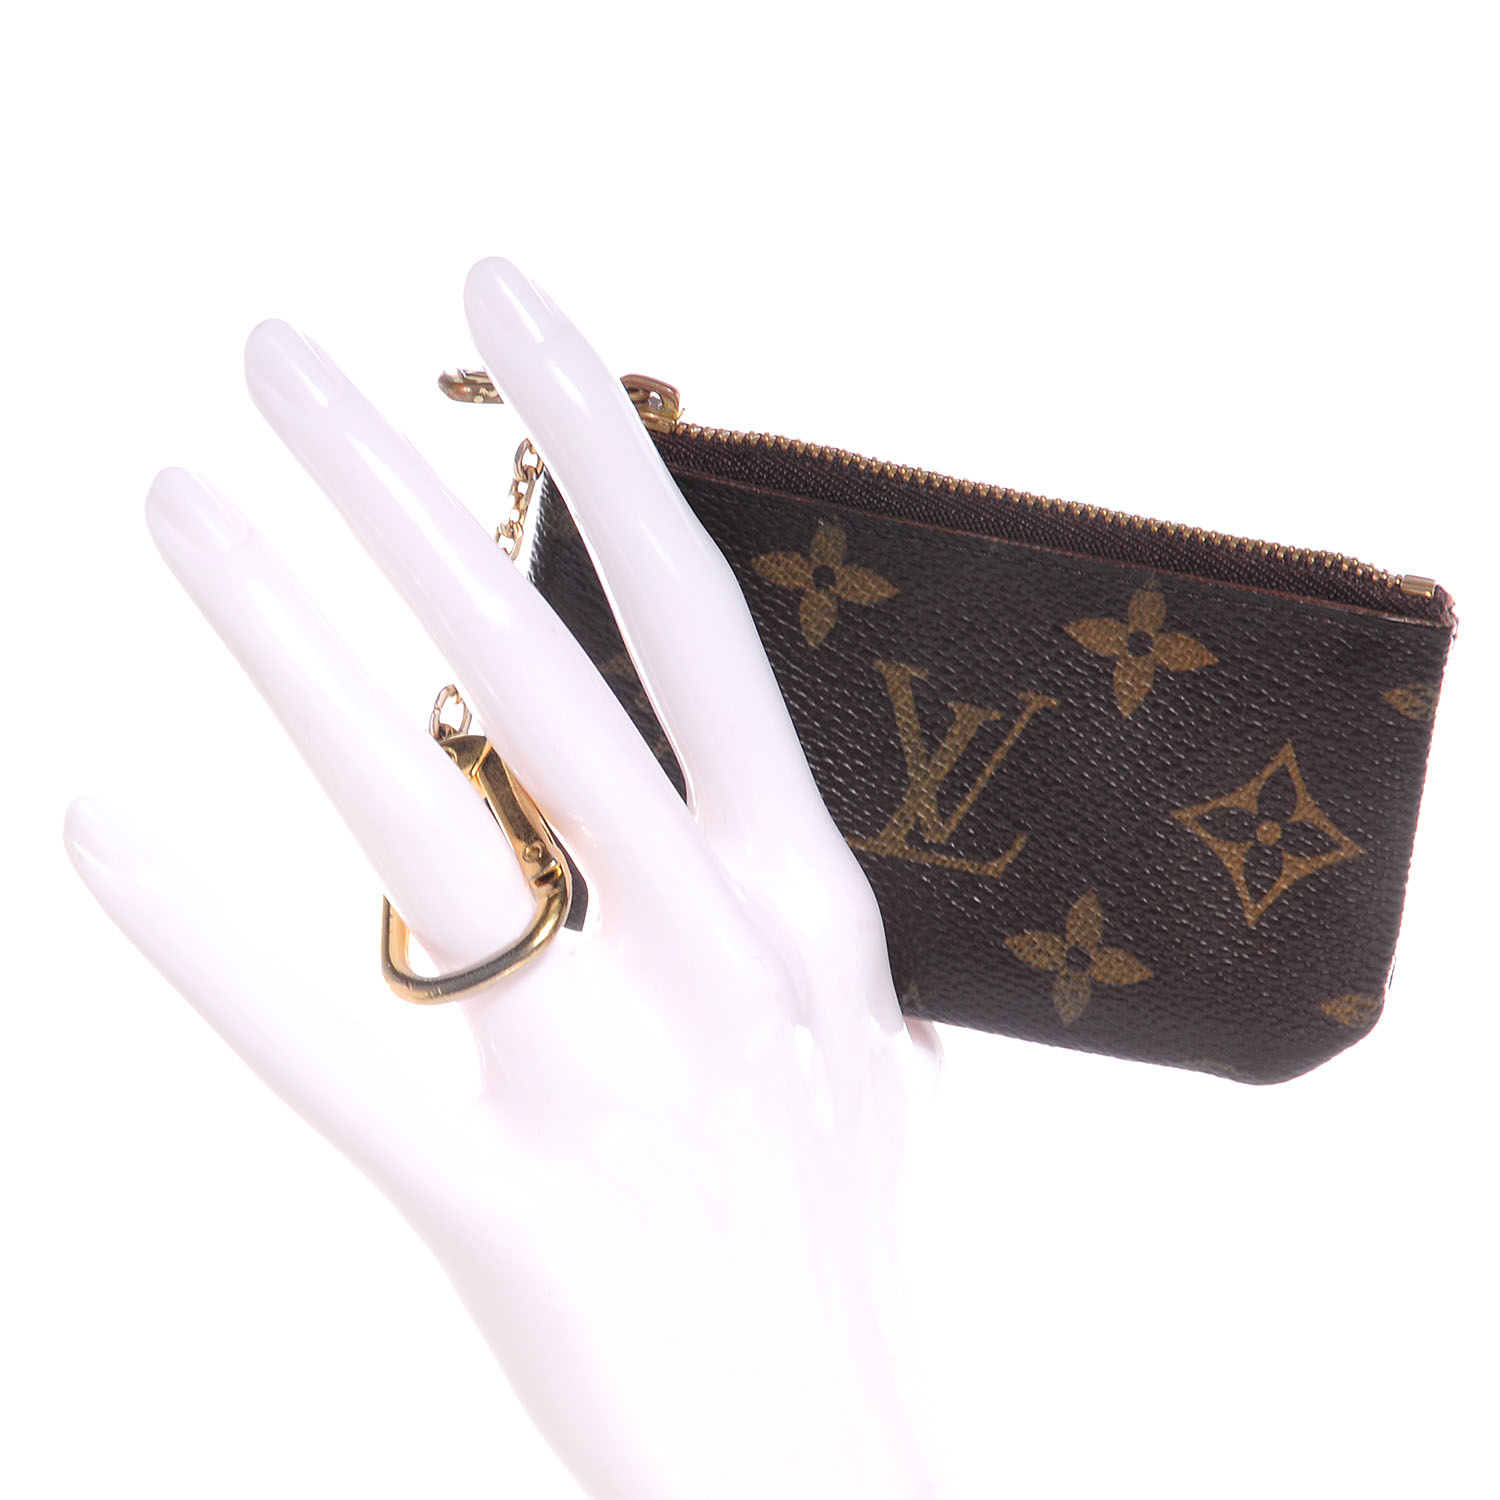 Louis Vuitton Key Pouch Neiman Marcus 0278